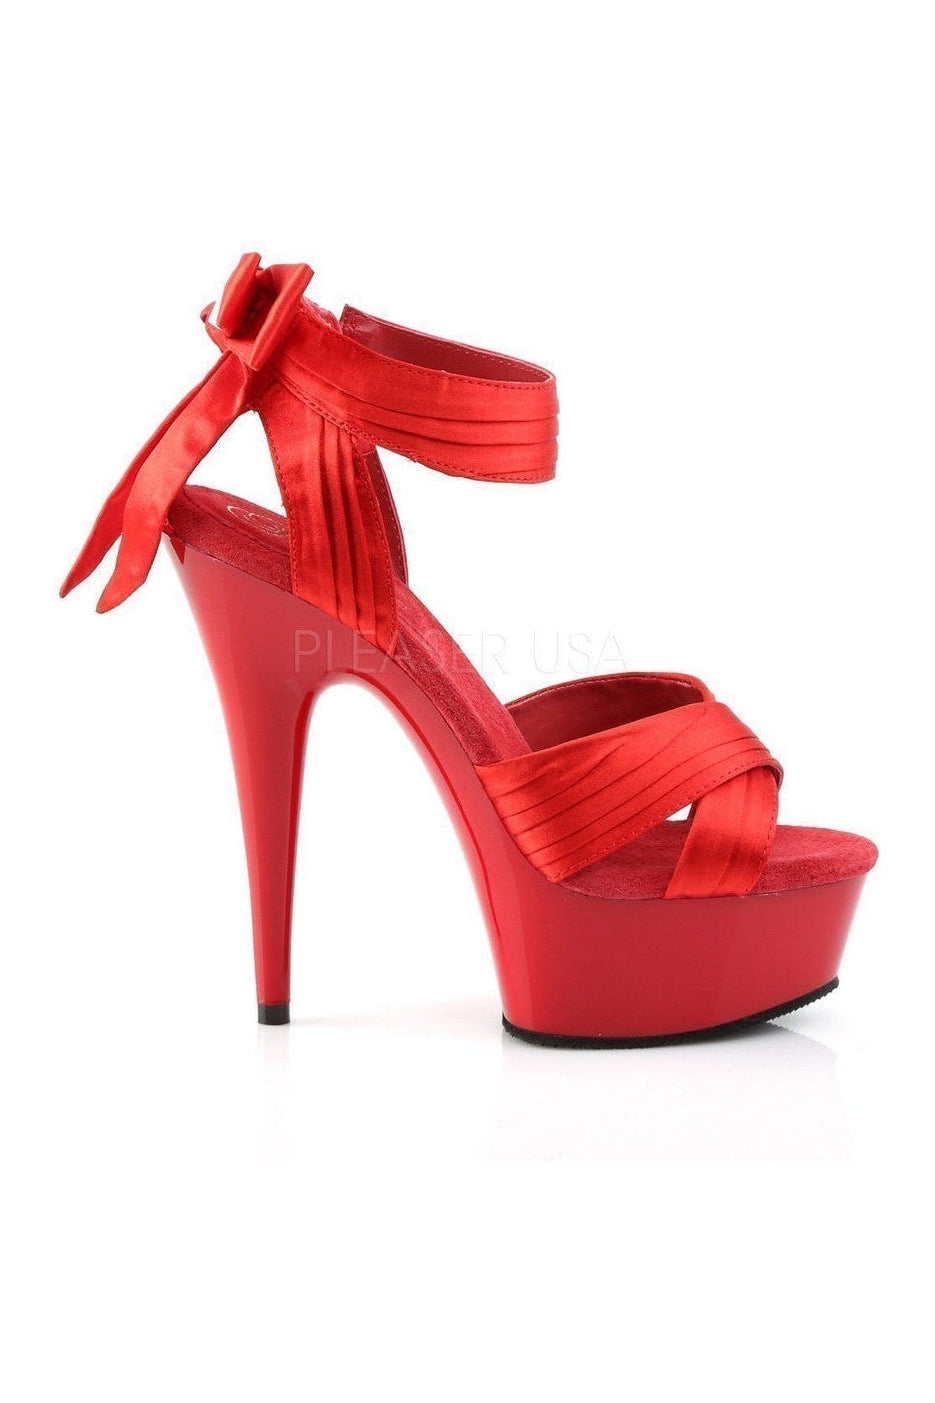 DELIGHT-668 Platform Sandal | Red Genuine Satin-Pleaser-Sandals-SEXYSHOES.COM